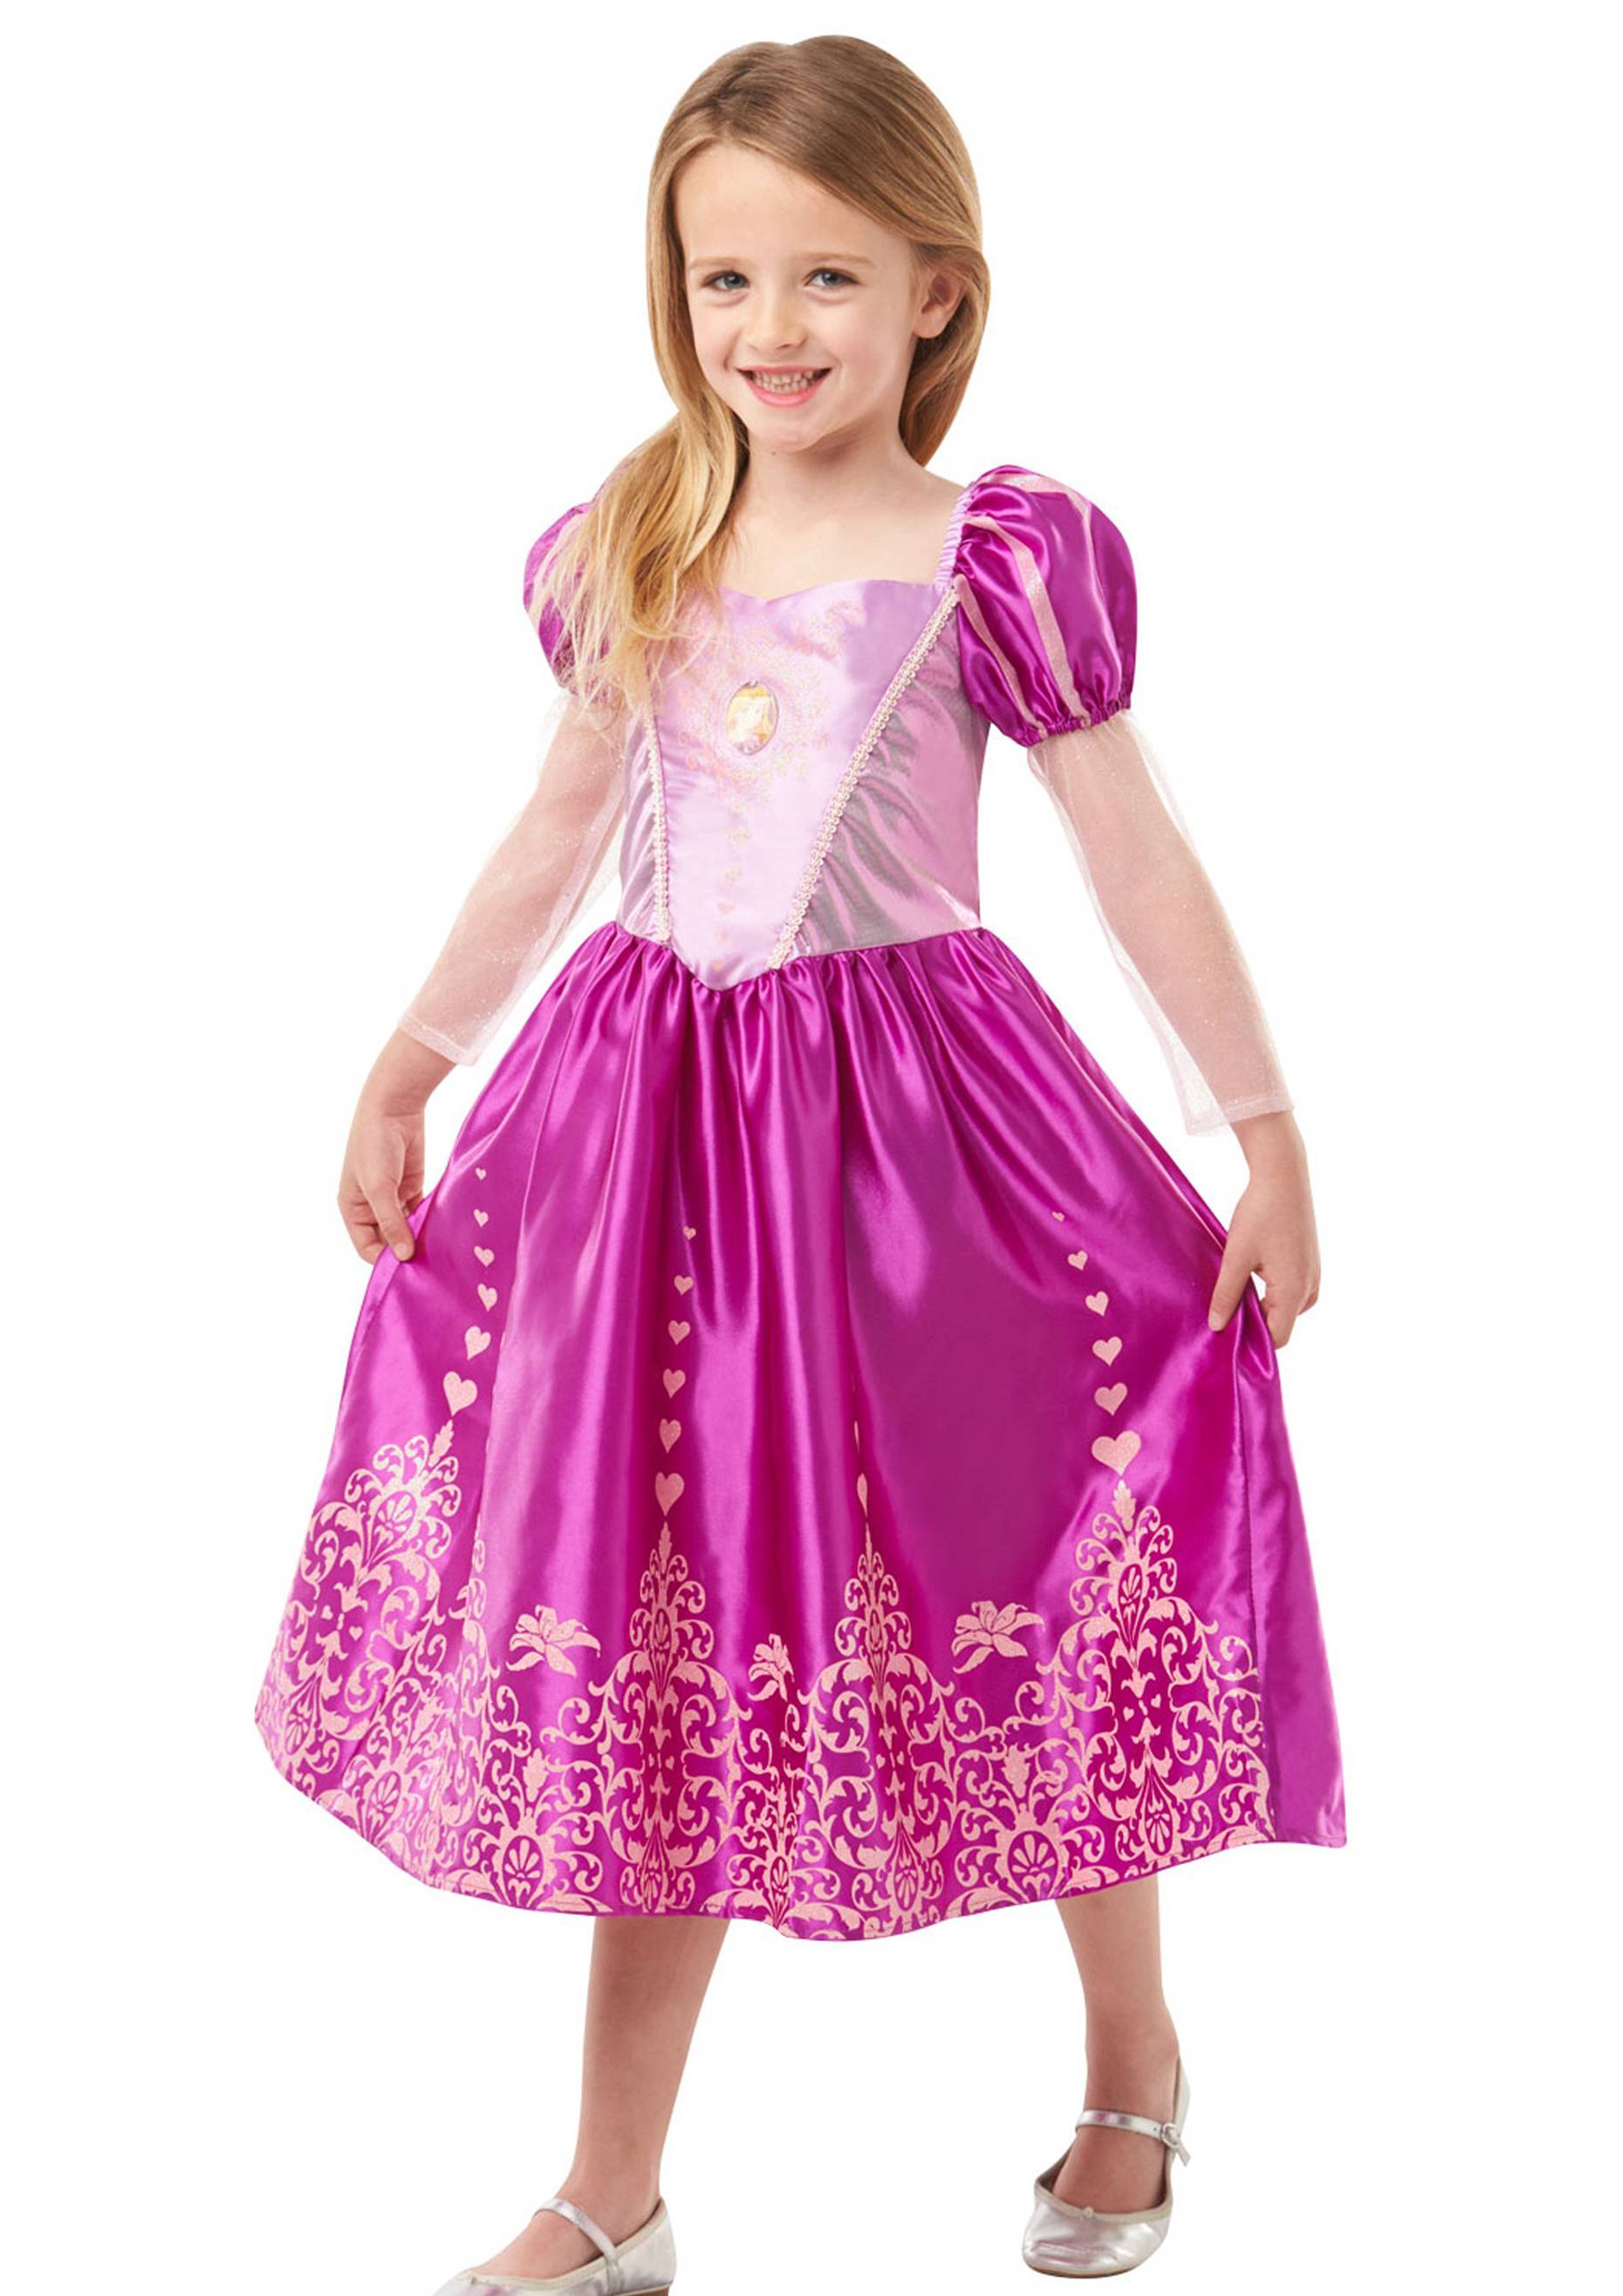 Disfraz de Rapunzel Deluxe de Disney para niñas